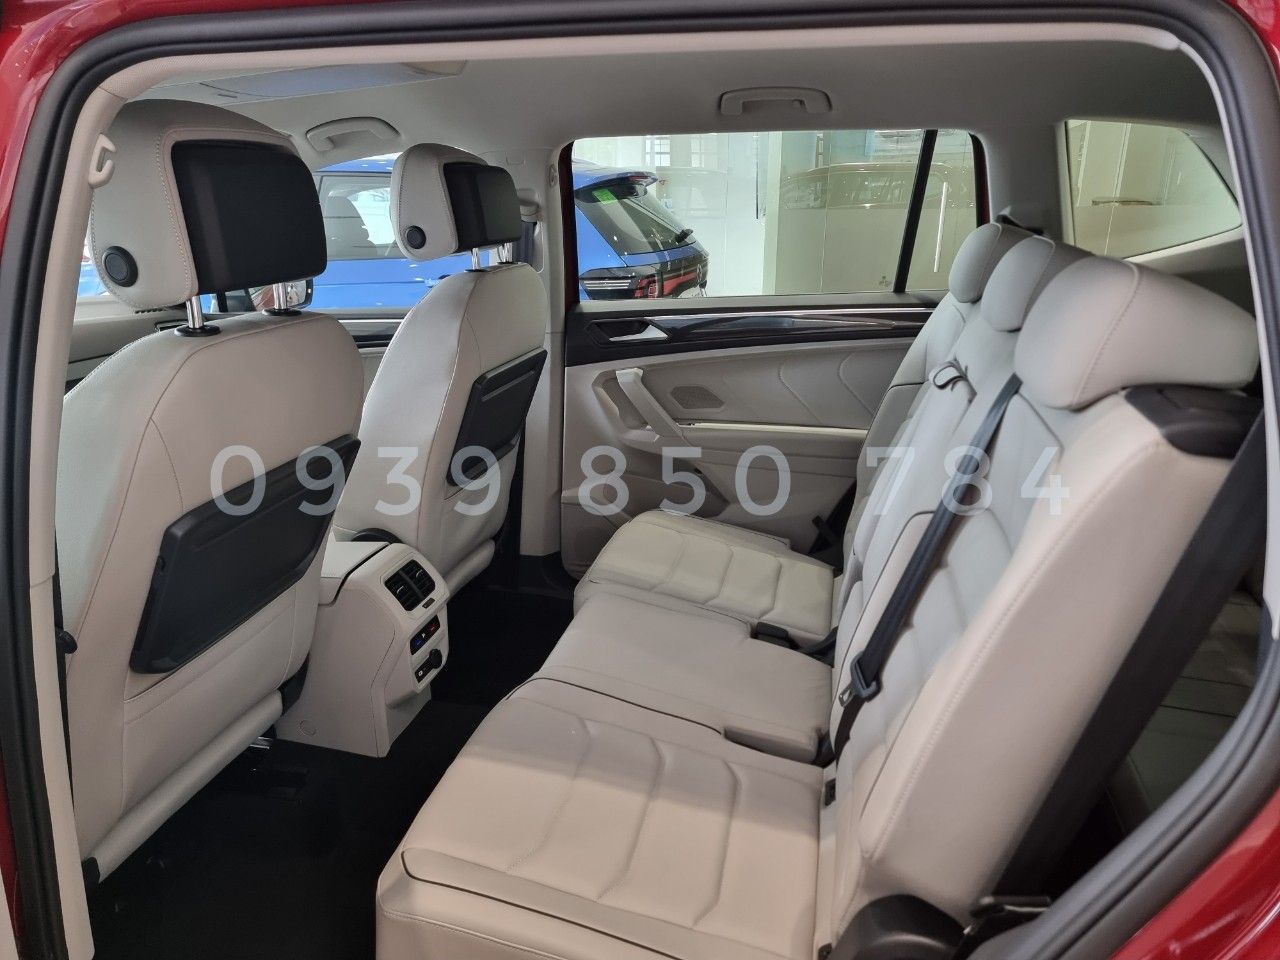 Volkswagen Tiguan 2022 - 1 chiếc màu đỏ nội thất trắng giảm ngay 180tr